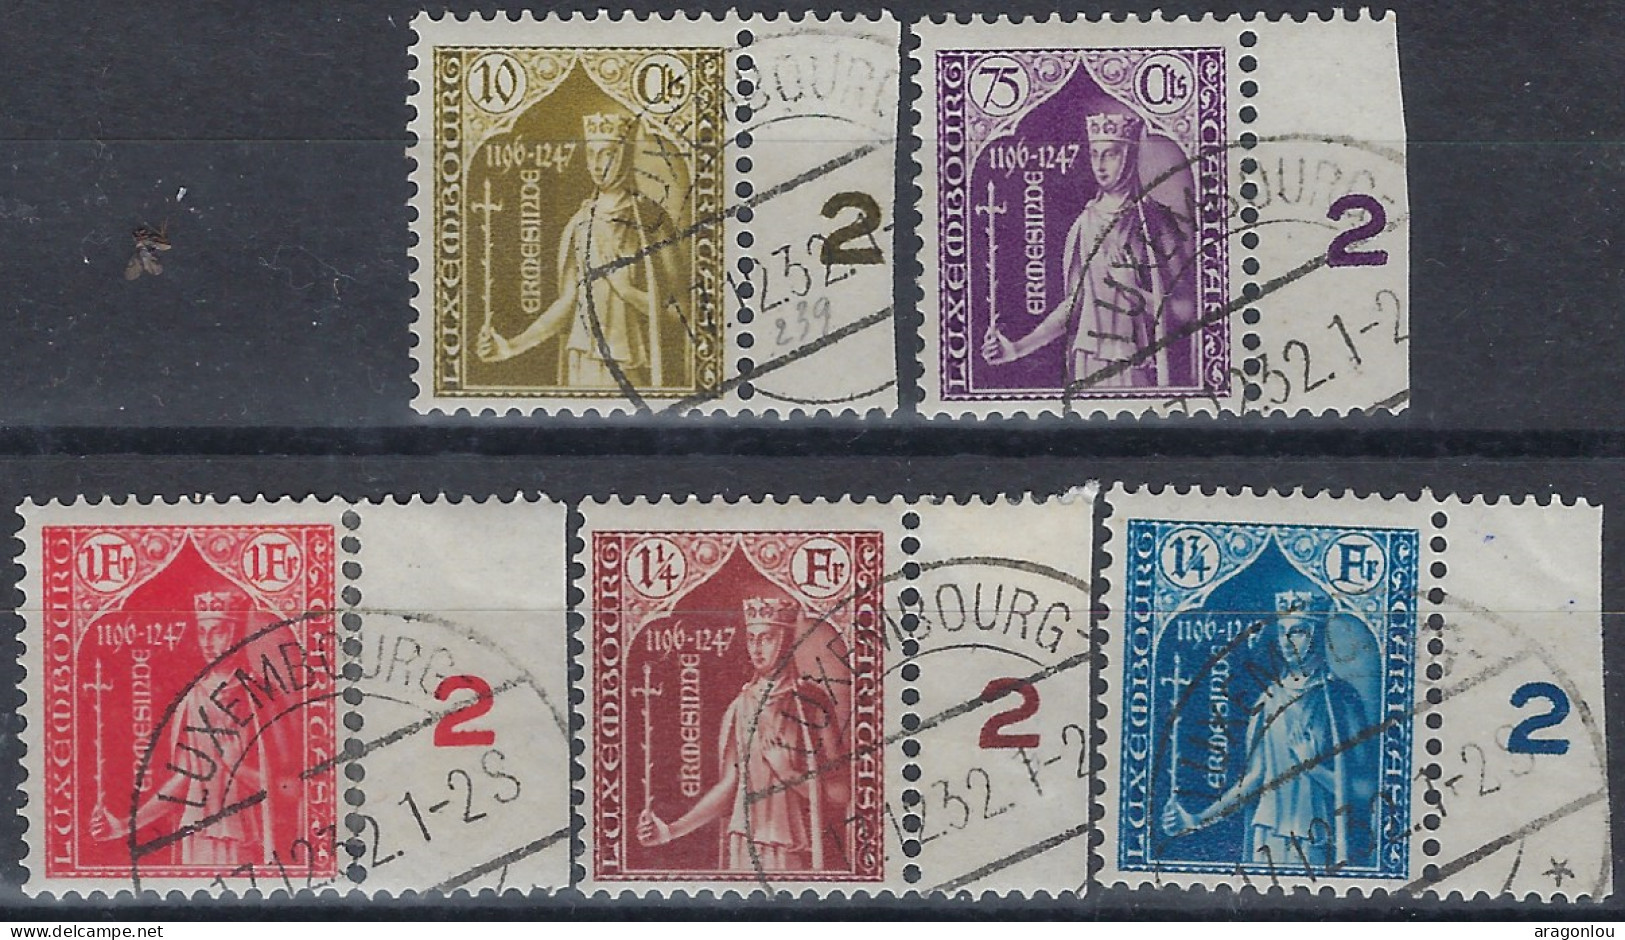 Luxembourg - Luxemburg - Timbres  1932  Série    Comtesse   Ermesinde    Caritas °   VC.140,- - Usados